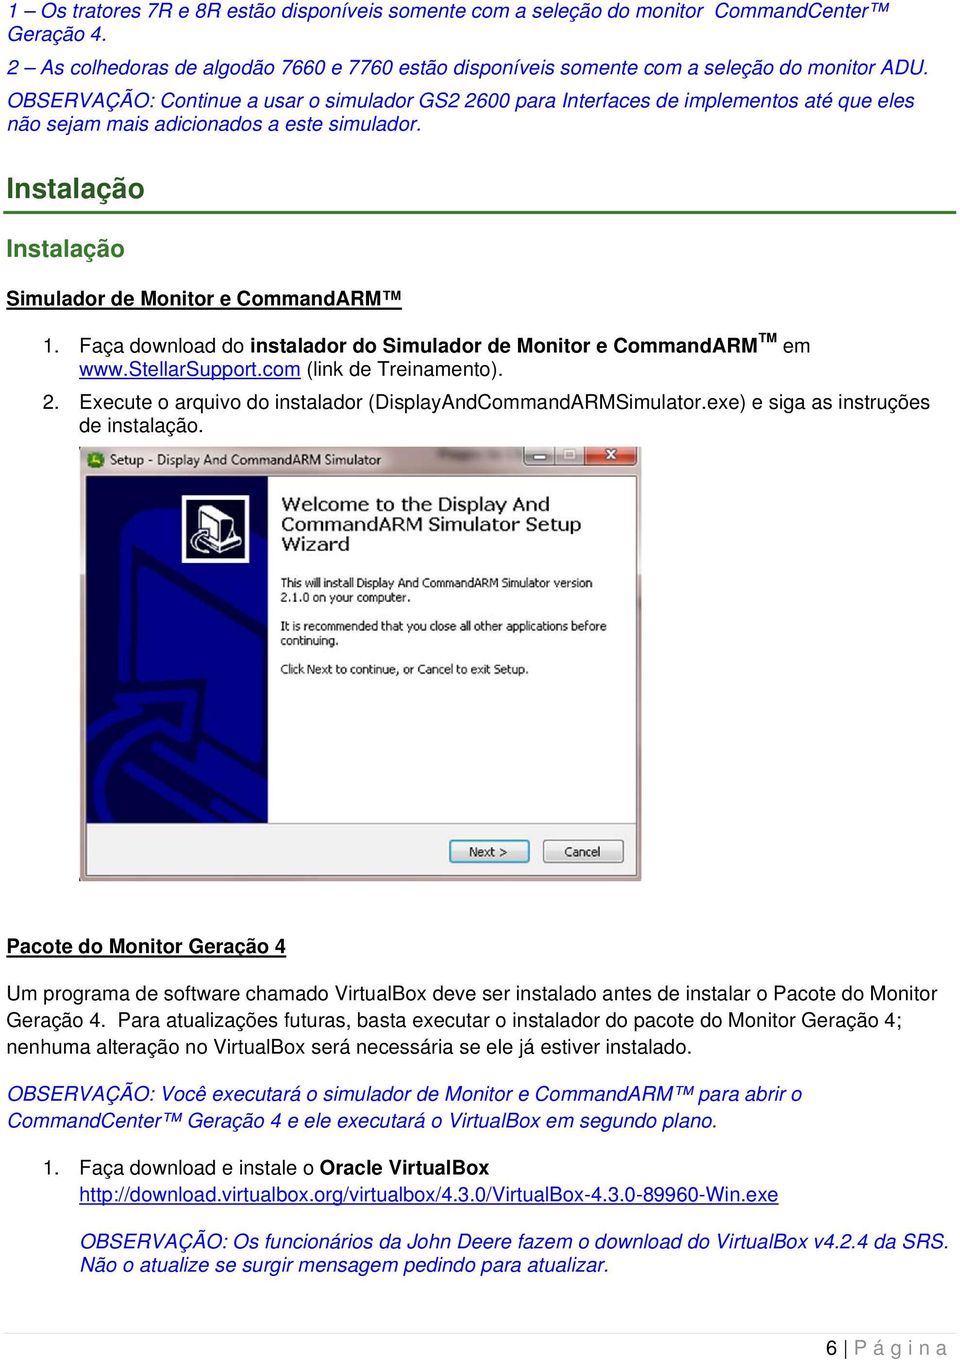 Faça download do instalador do Simulador de Monitor e CommandARM TM em www.stellarsupport.com (link de Treinamento). 2. Execute o arquivo do instalador (DisplayAndCommandARMSimulator.